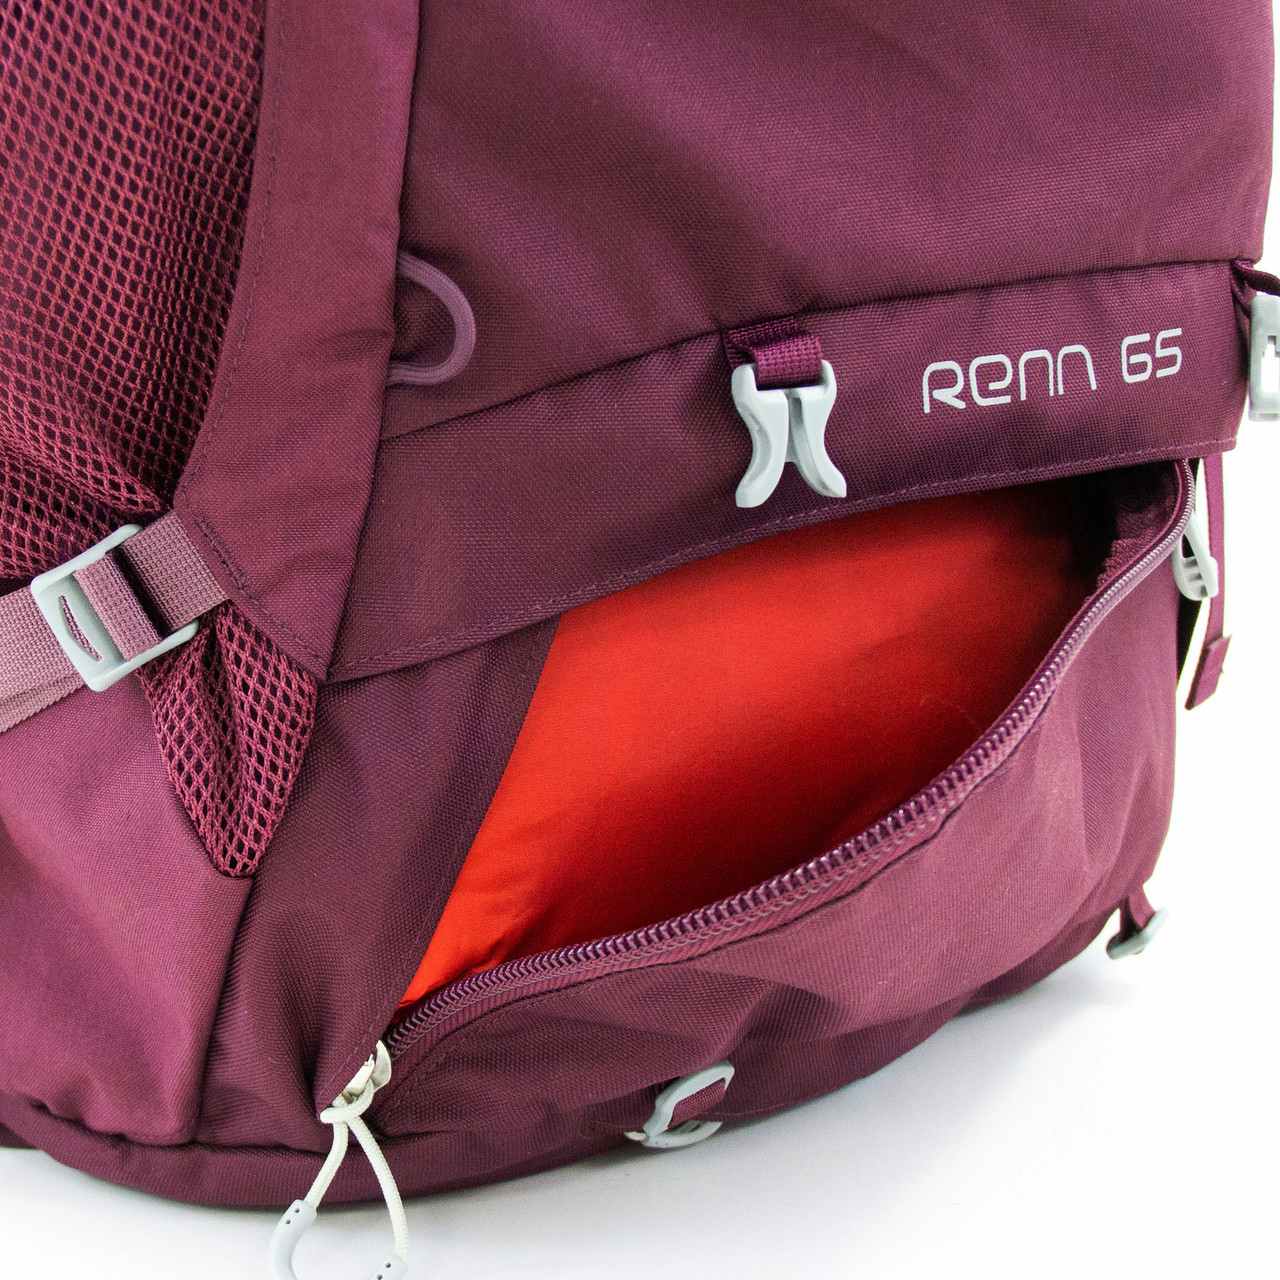 Renn 65L Backpack